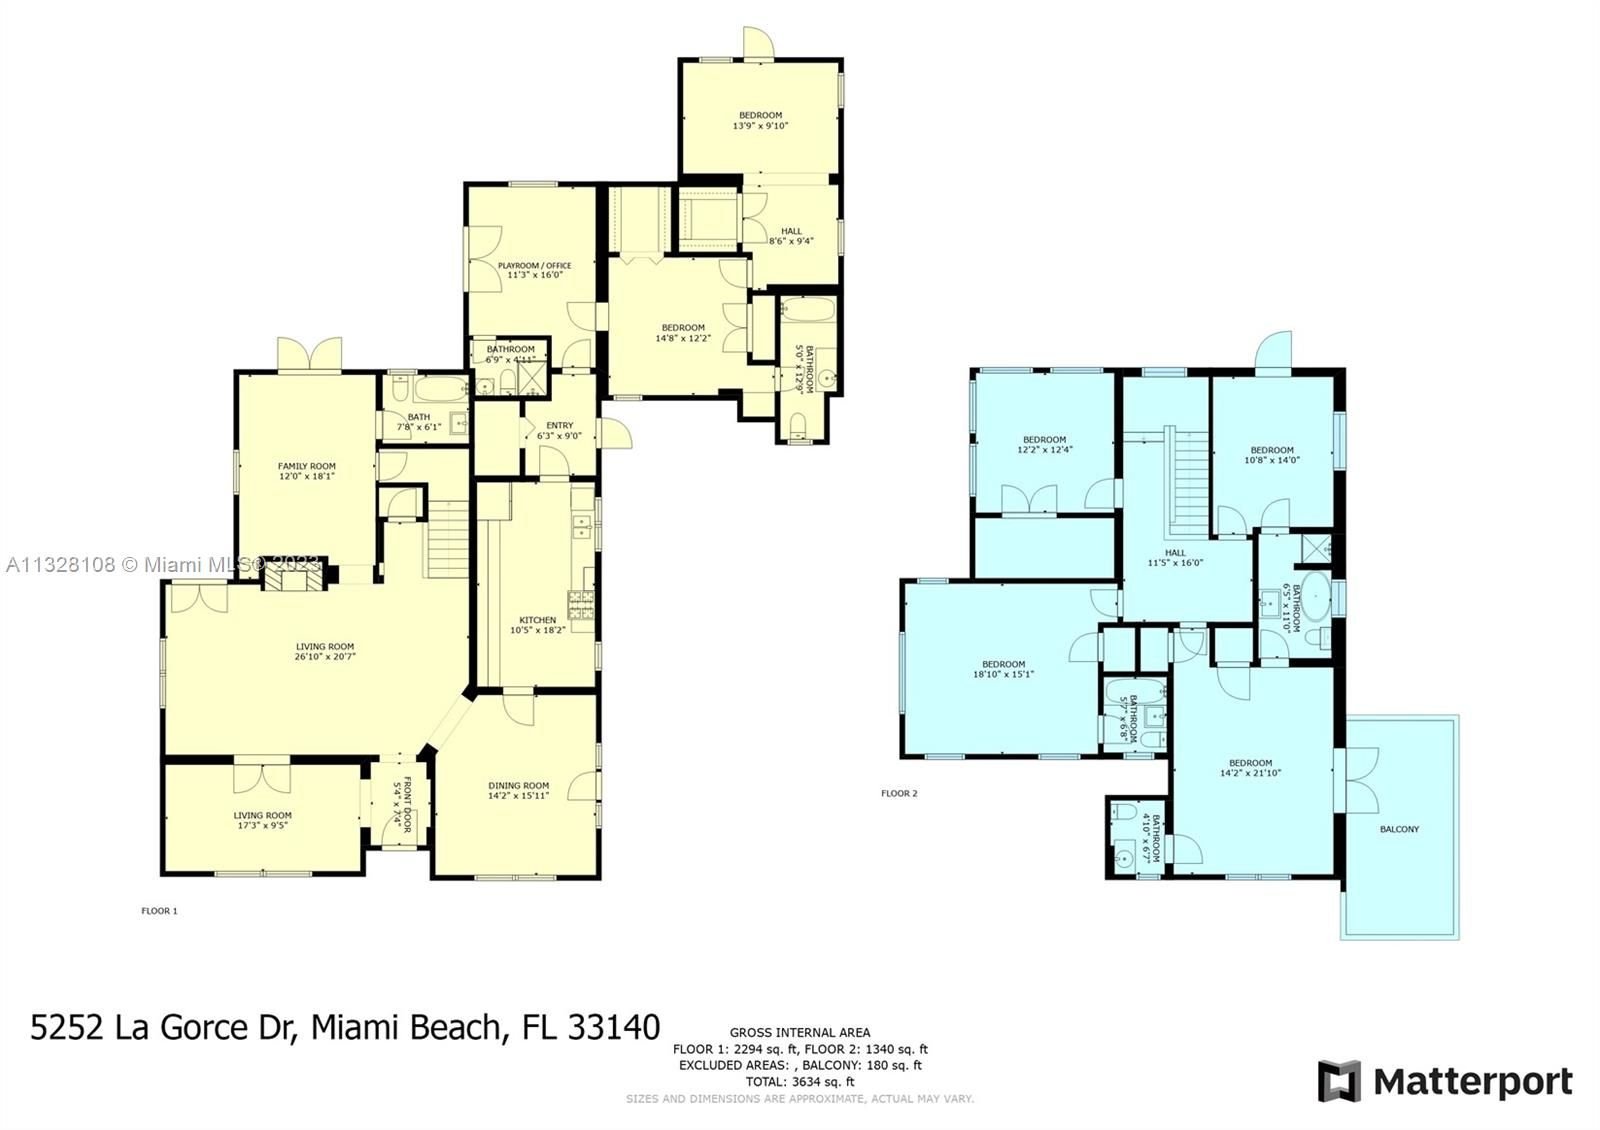 Real estate property located at 5252 La Gorce Dr, Miami-Dade County, Miami Beach, FL